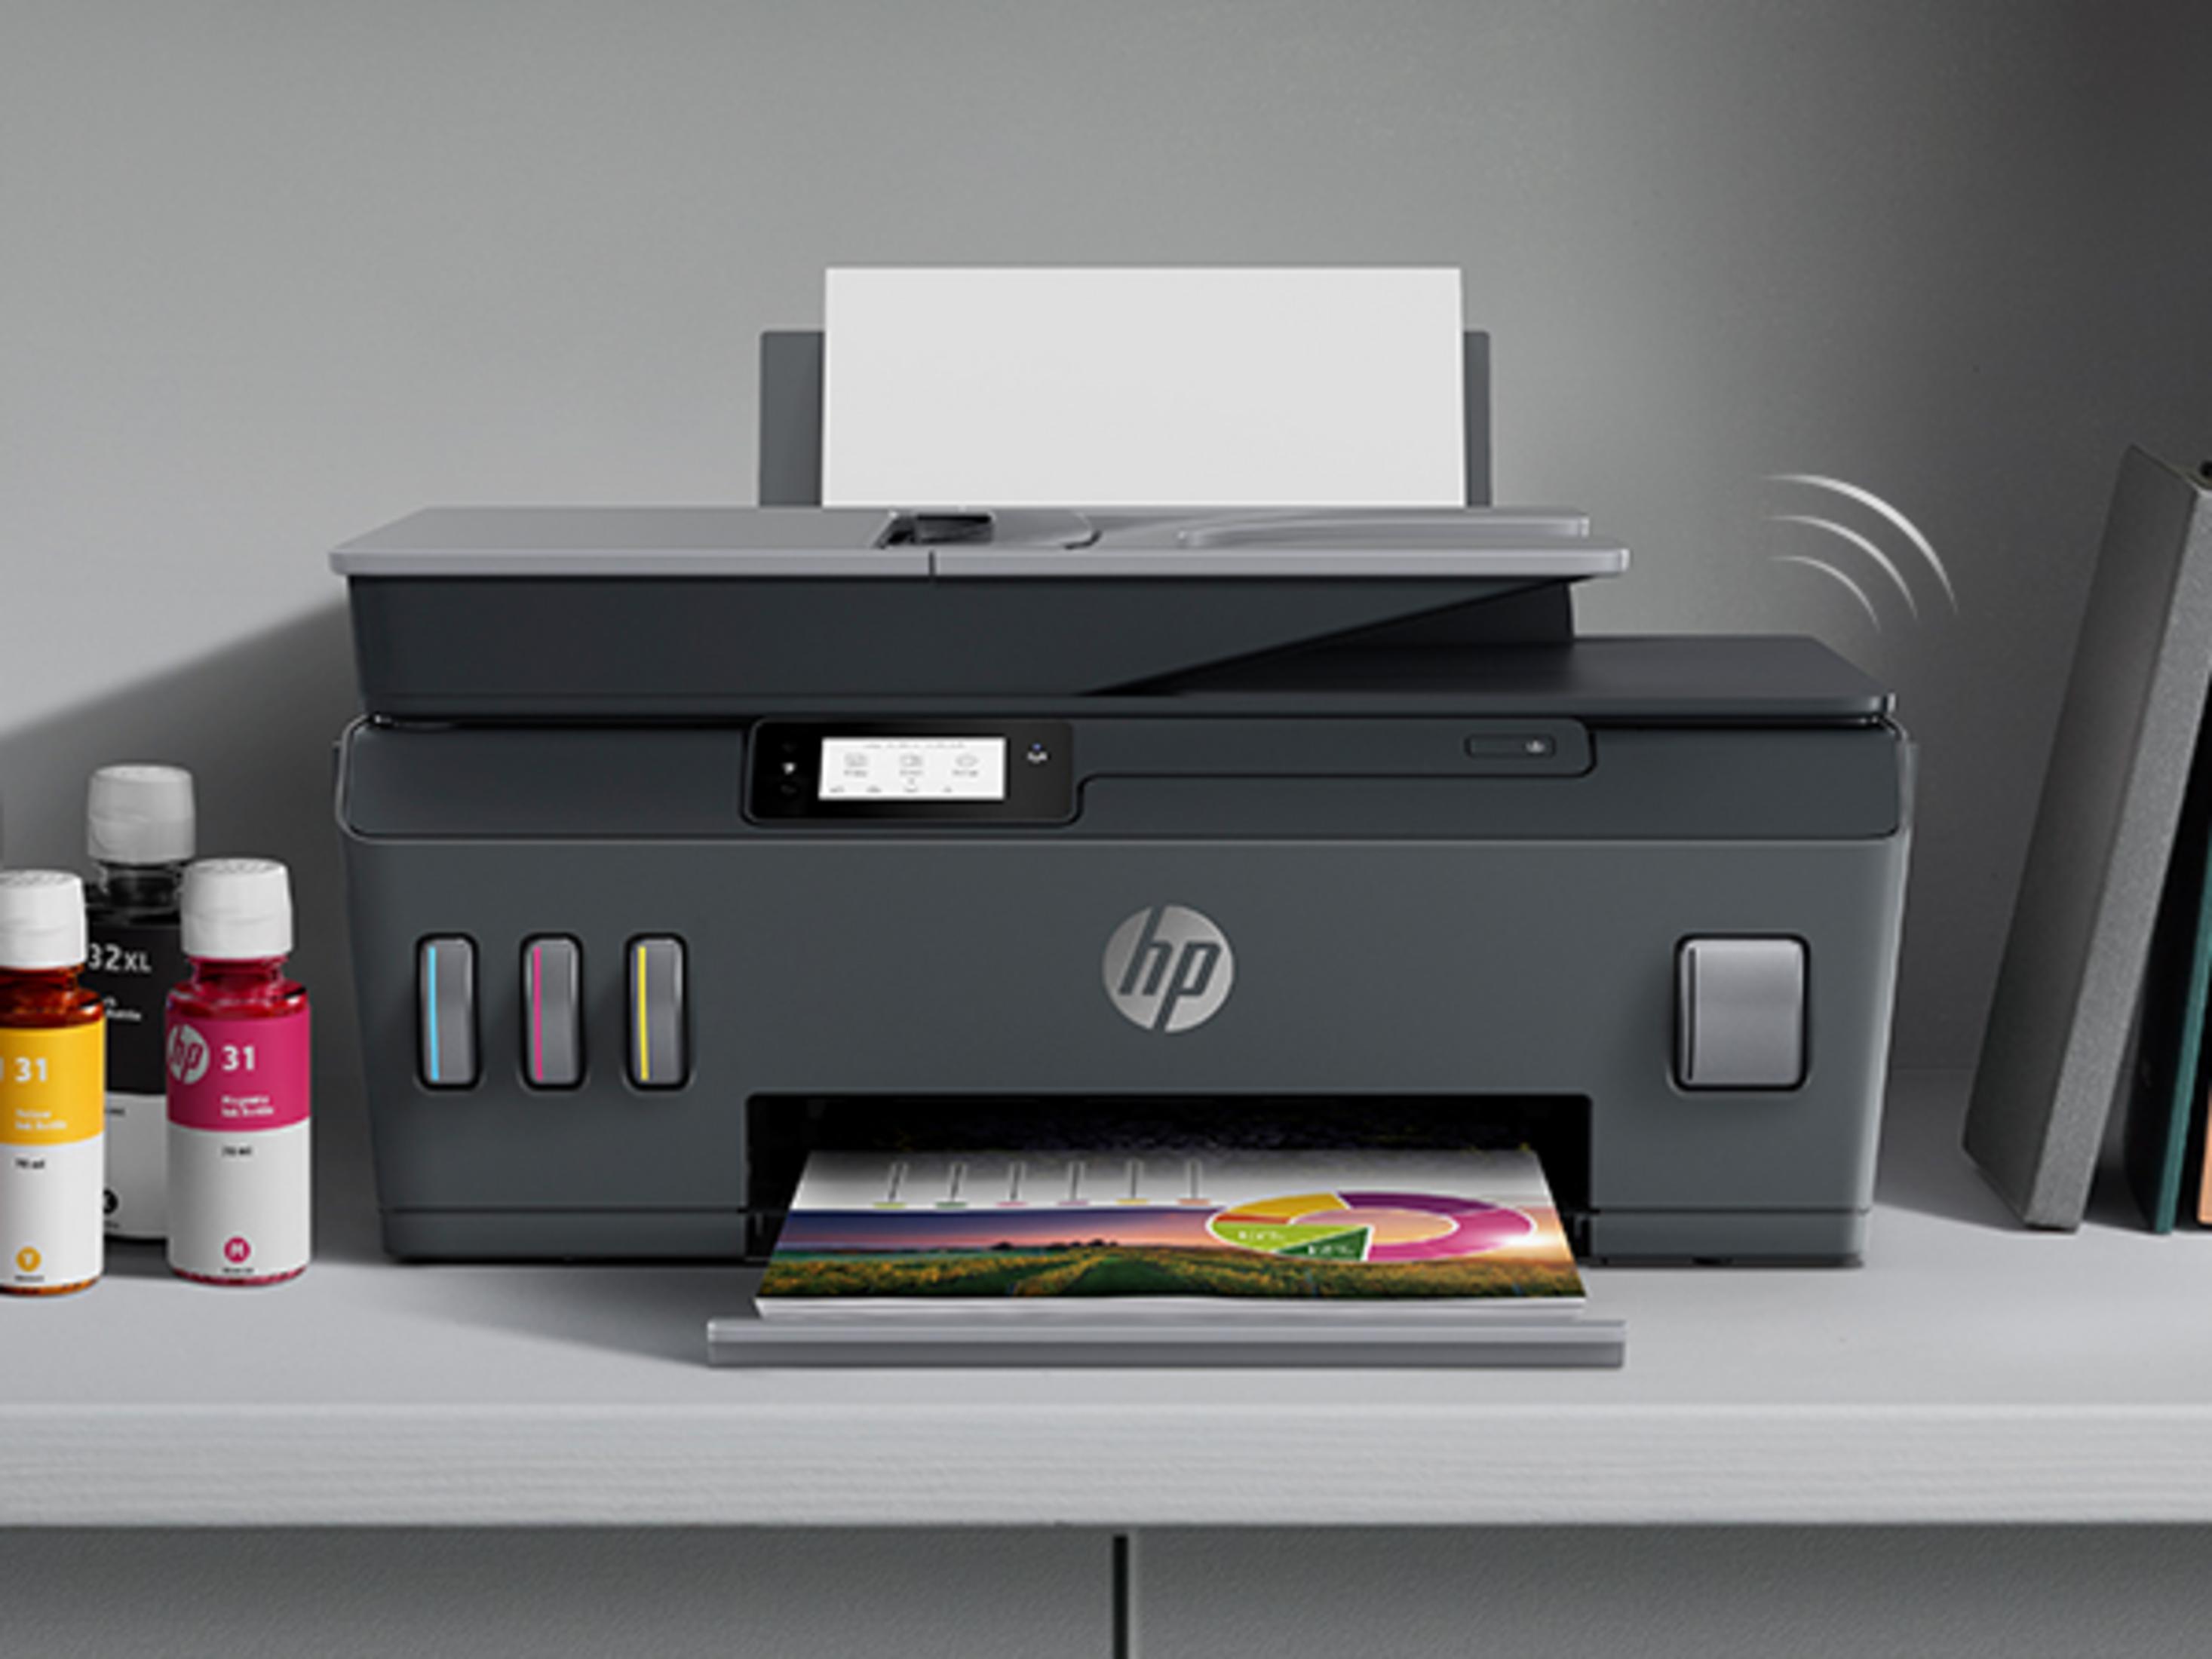 HP SMART TANK Multifunktionsdrucker 570 Thermal PLUS WLAN Inkjet